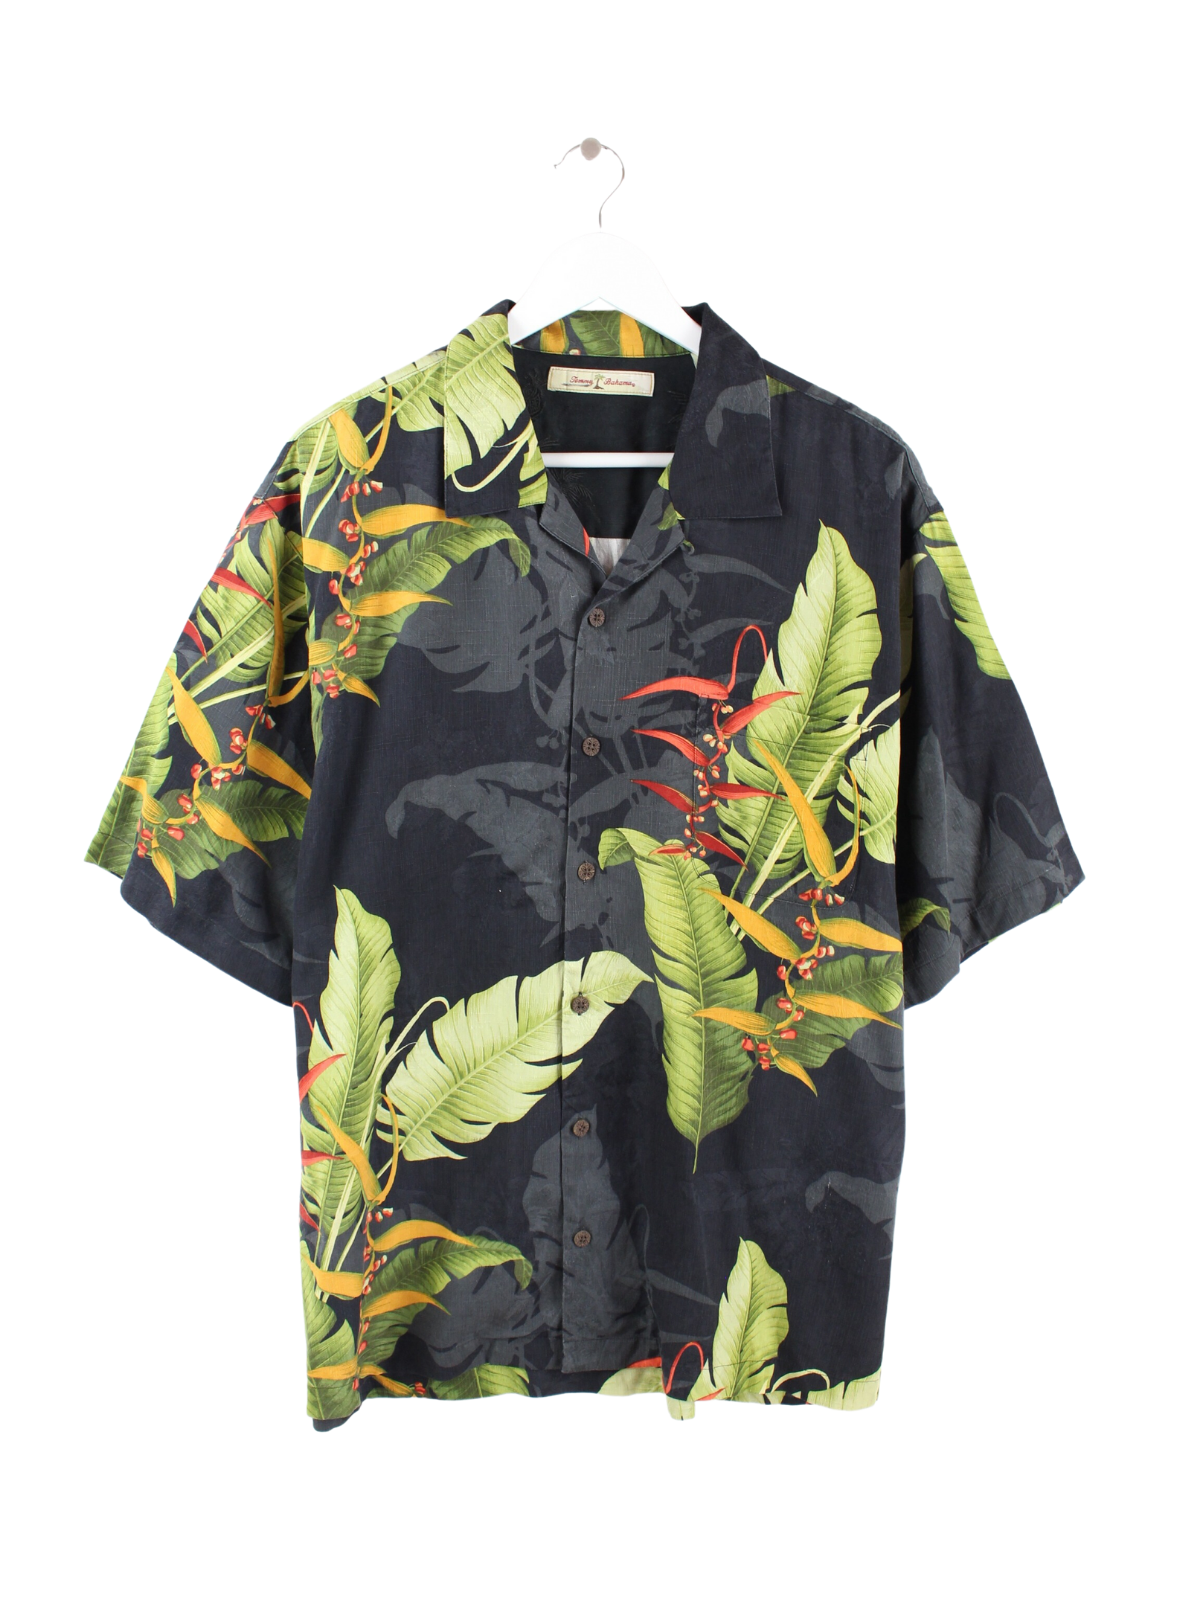 Tommy Bahama 100% Silk Hawaiian Shirt Black XL